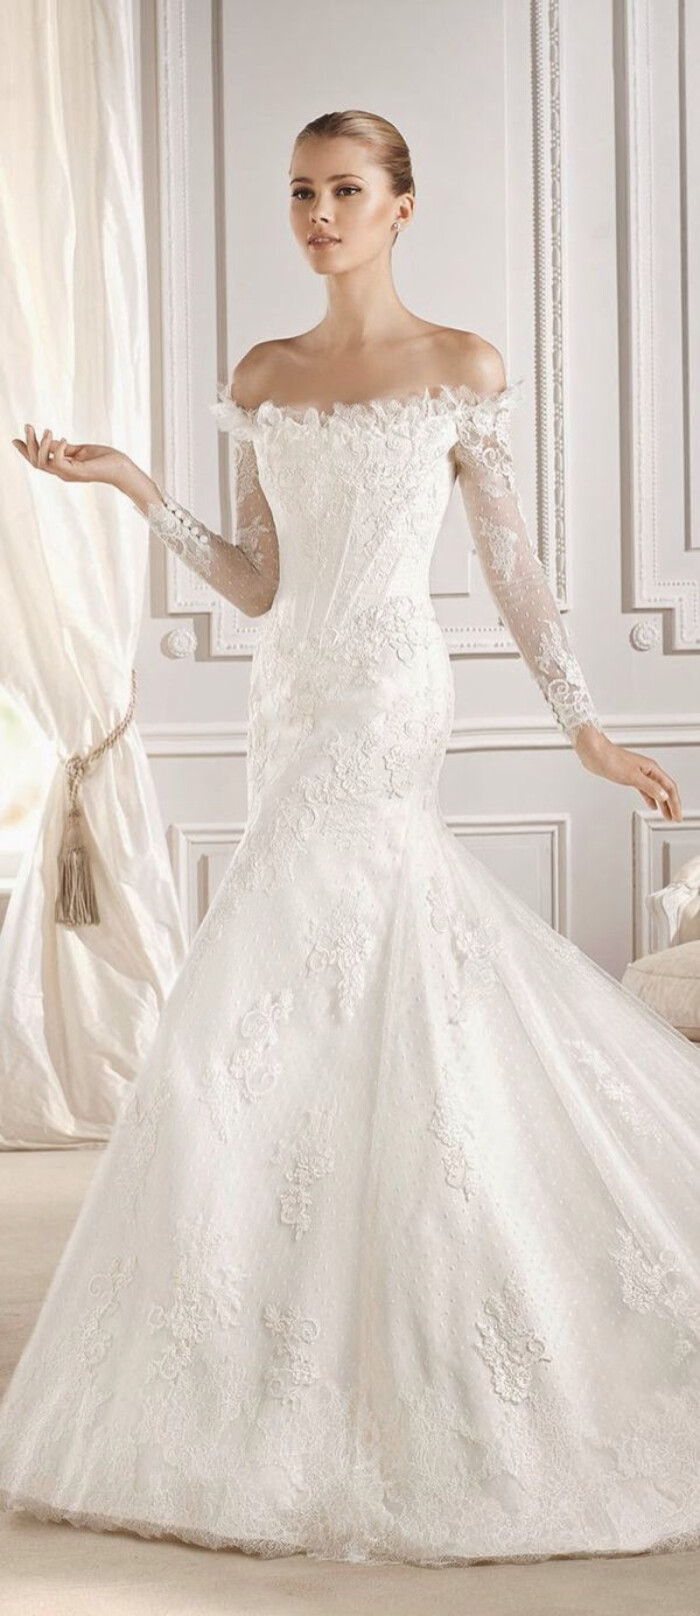 西班牙皇室品牌La sposa 2015婚纱系列-堆糖,